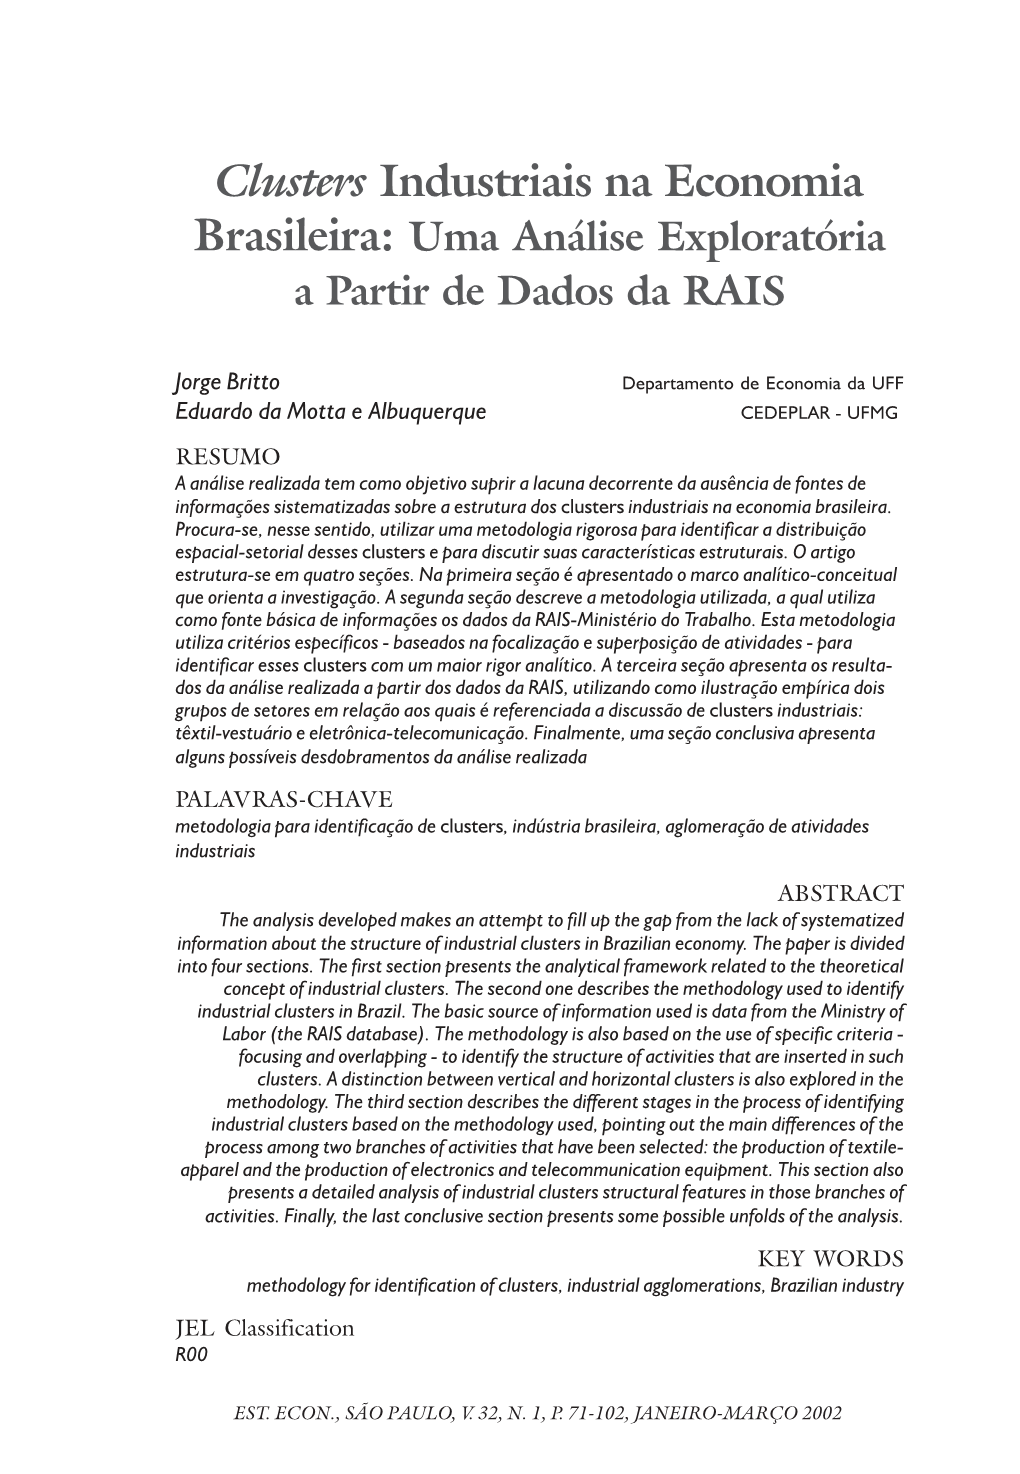 Clusters Industriais Na Economia Brasileira: Uma Análise Exploratória a Partir De Dados Da RAIS